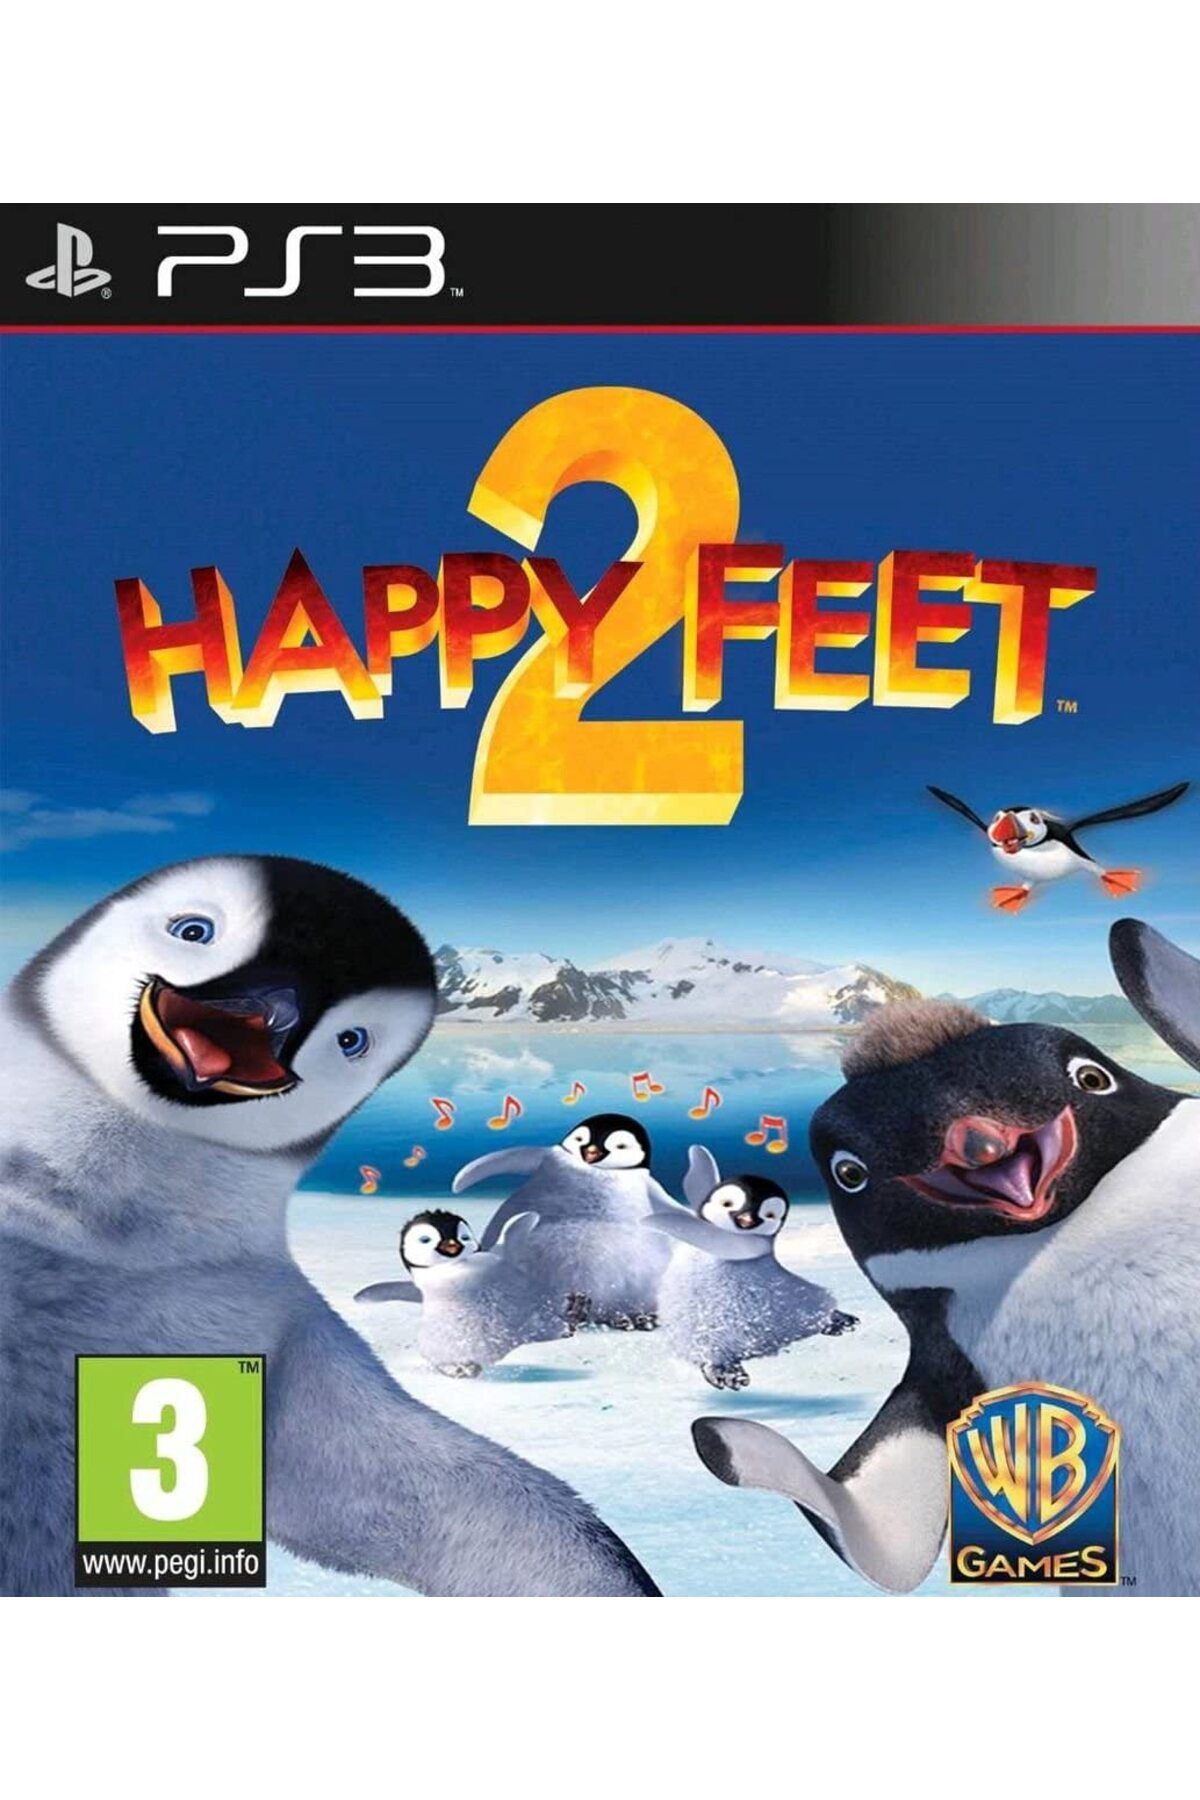 Wb Games Ps3 Happy Feet 2 %100 Oyun